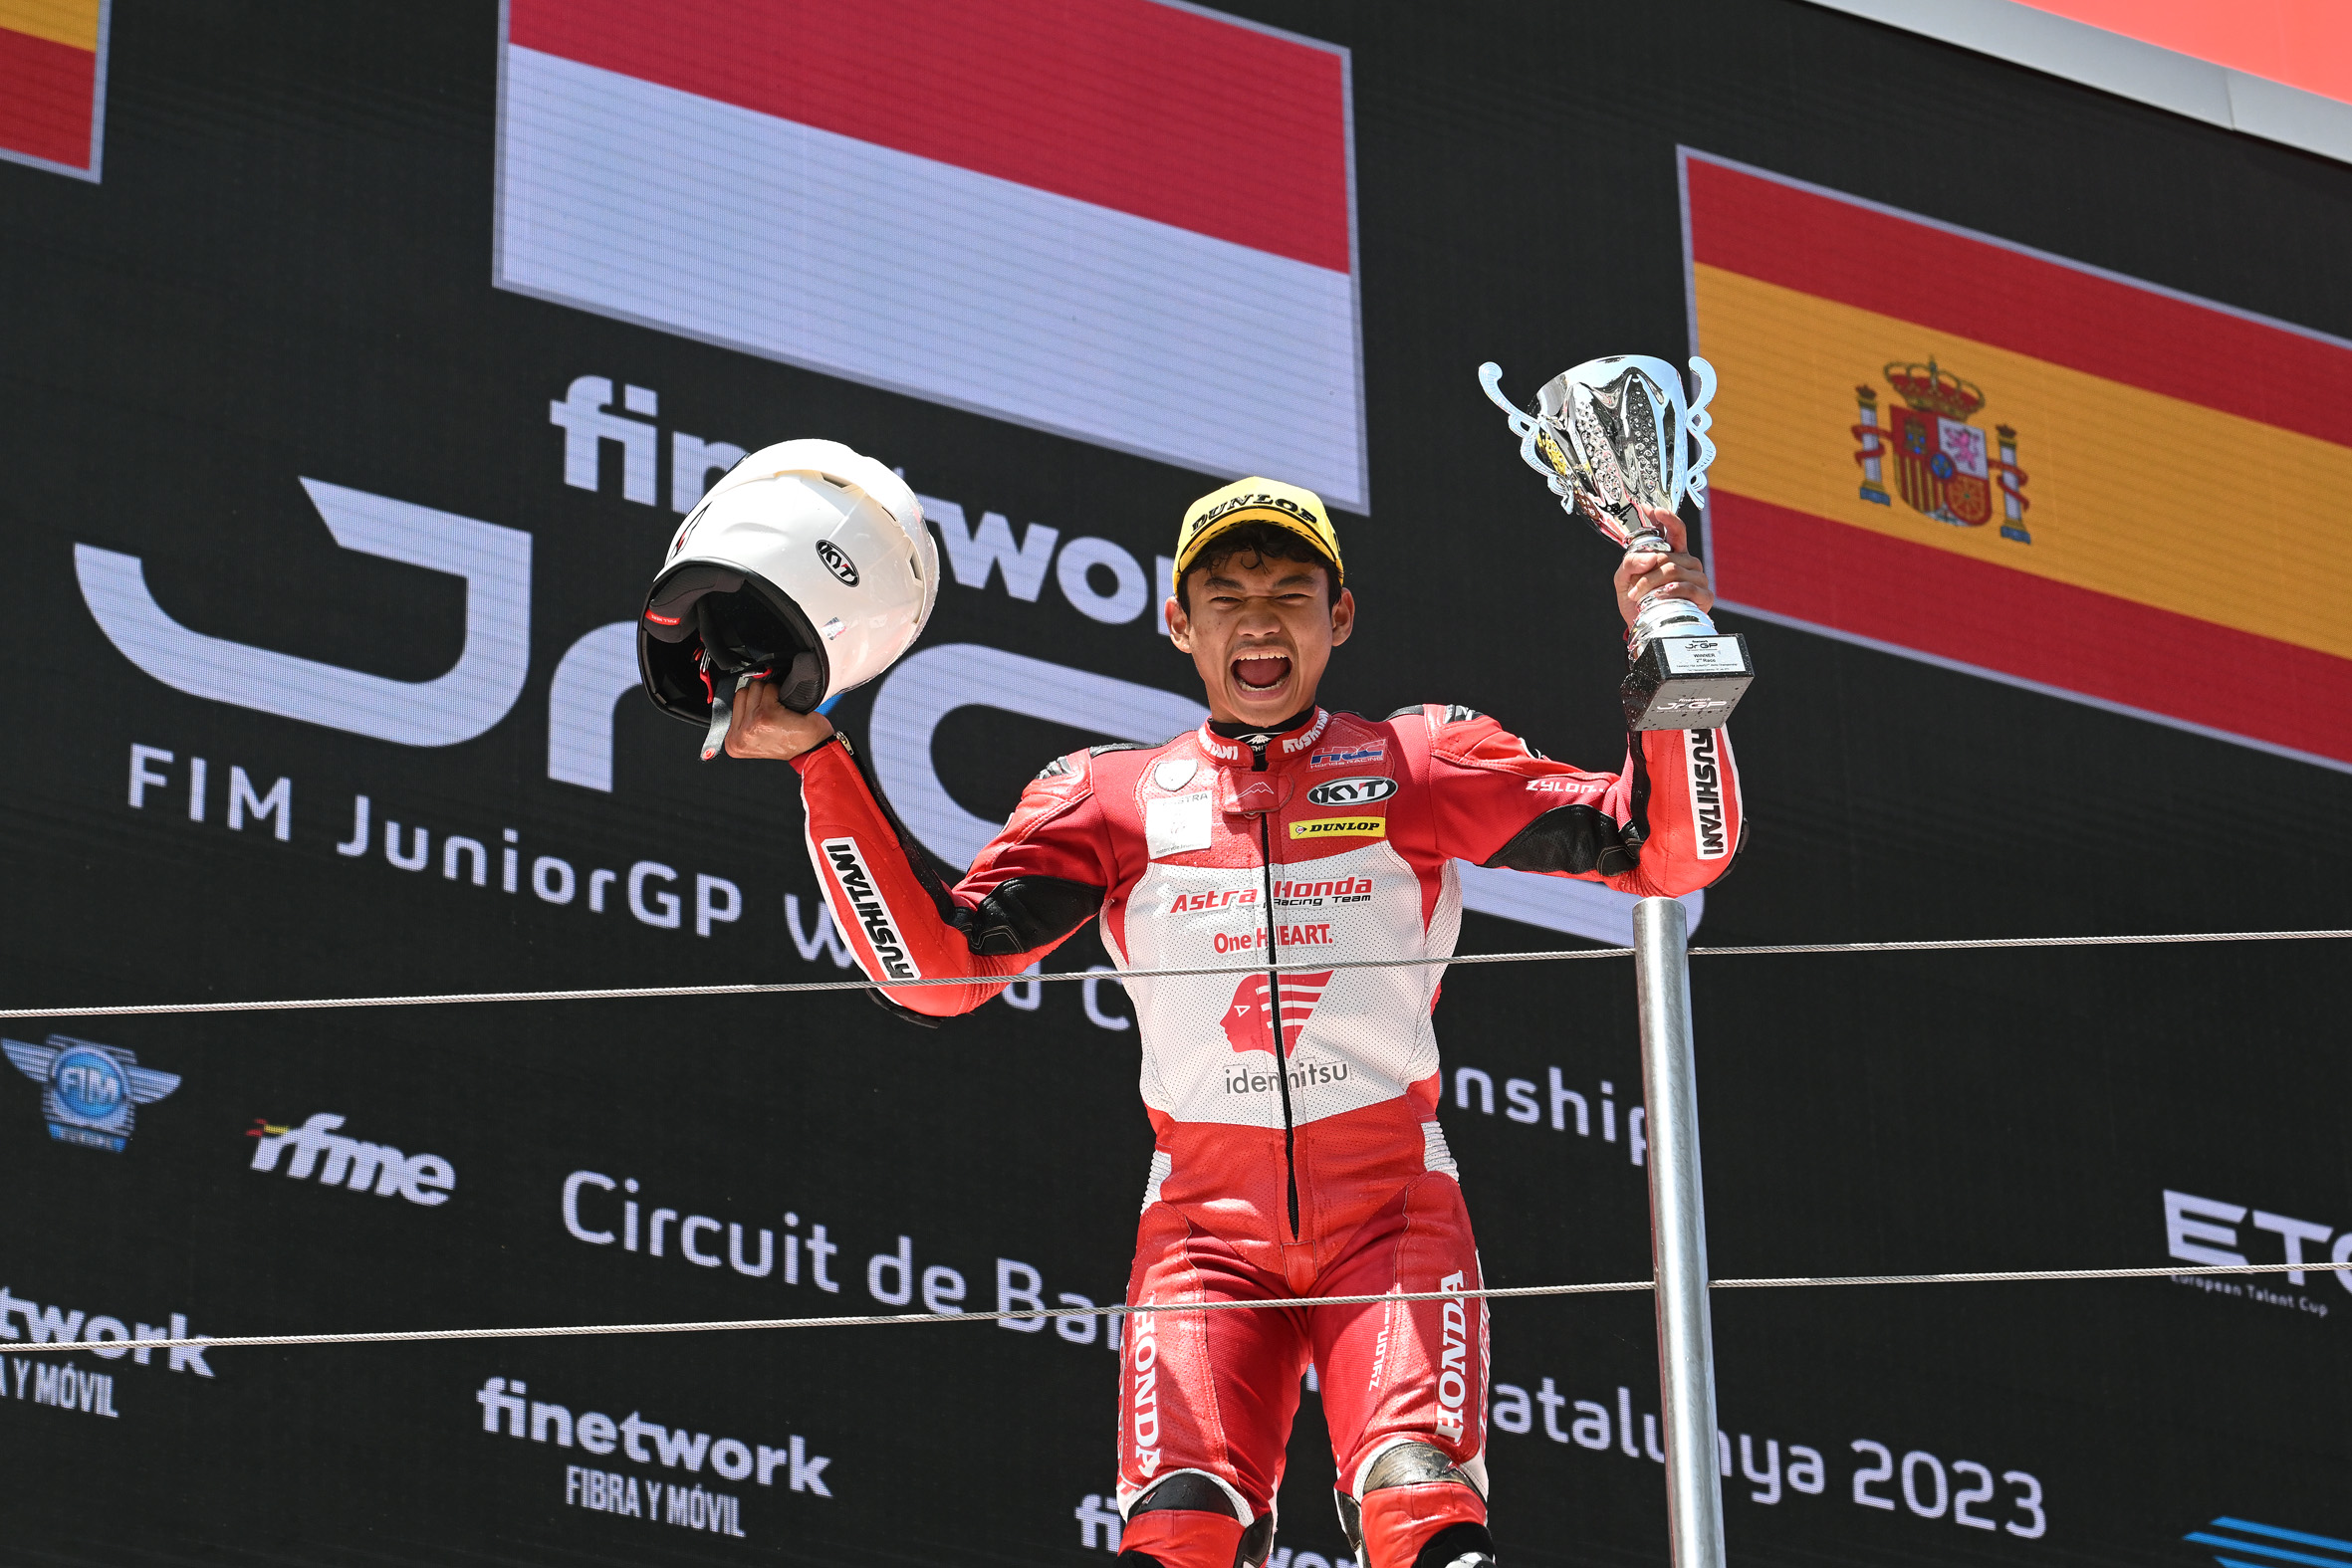 Pembalap Indonesia Fadillah Arbi Aditama jadi Juara JuniorGP seri Catalunya